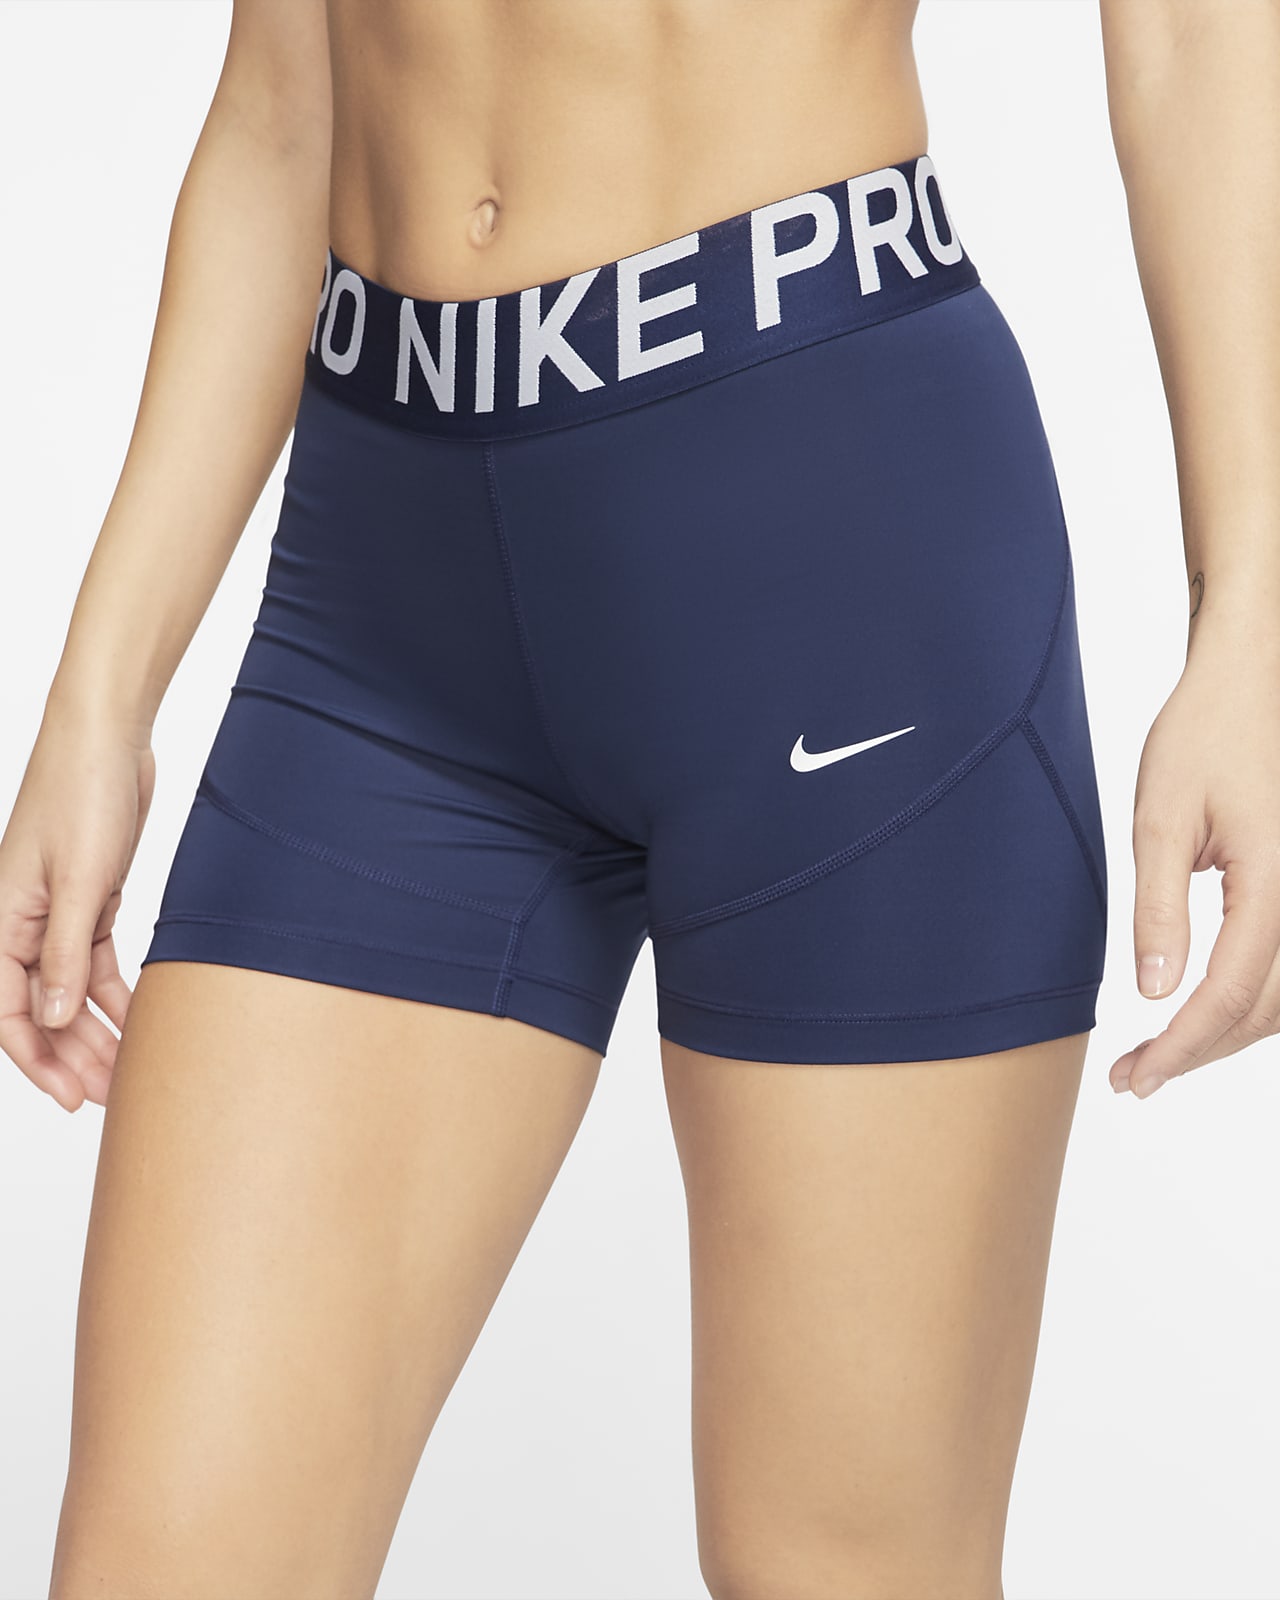 navy blue nike pros shorts